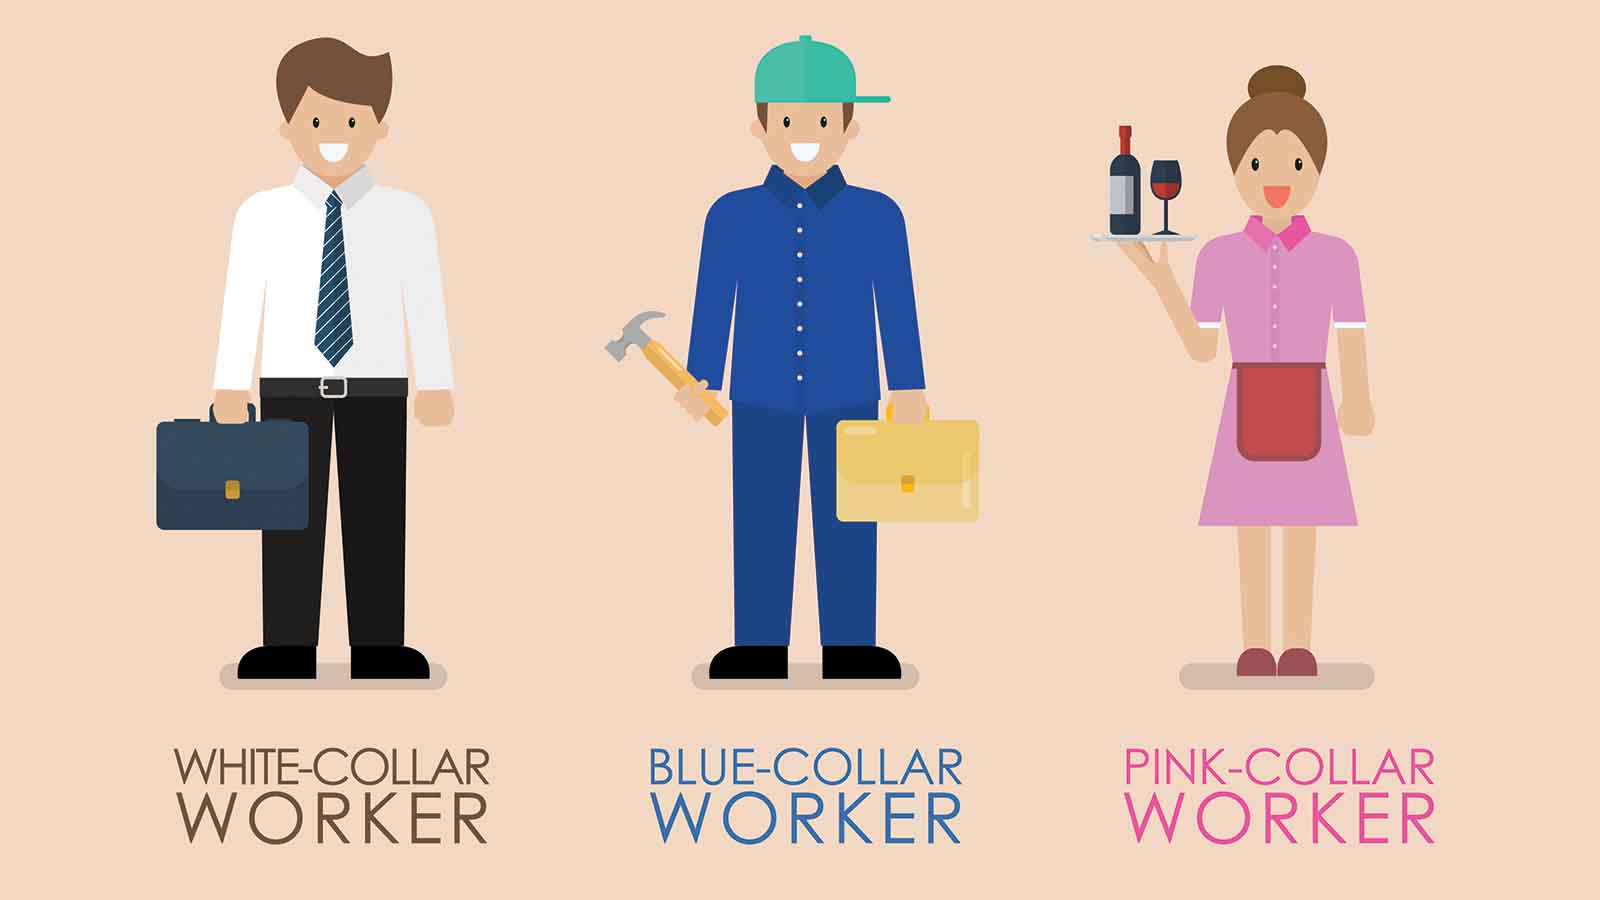 تفاوت کلمه ی Blue Collar و White Collar و Pink Collar